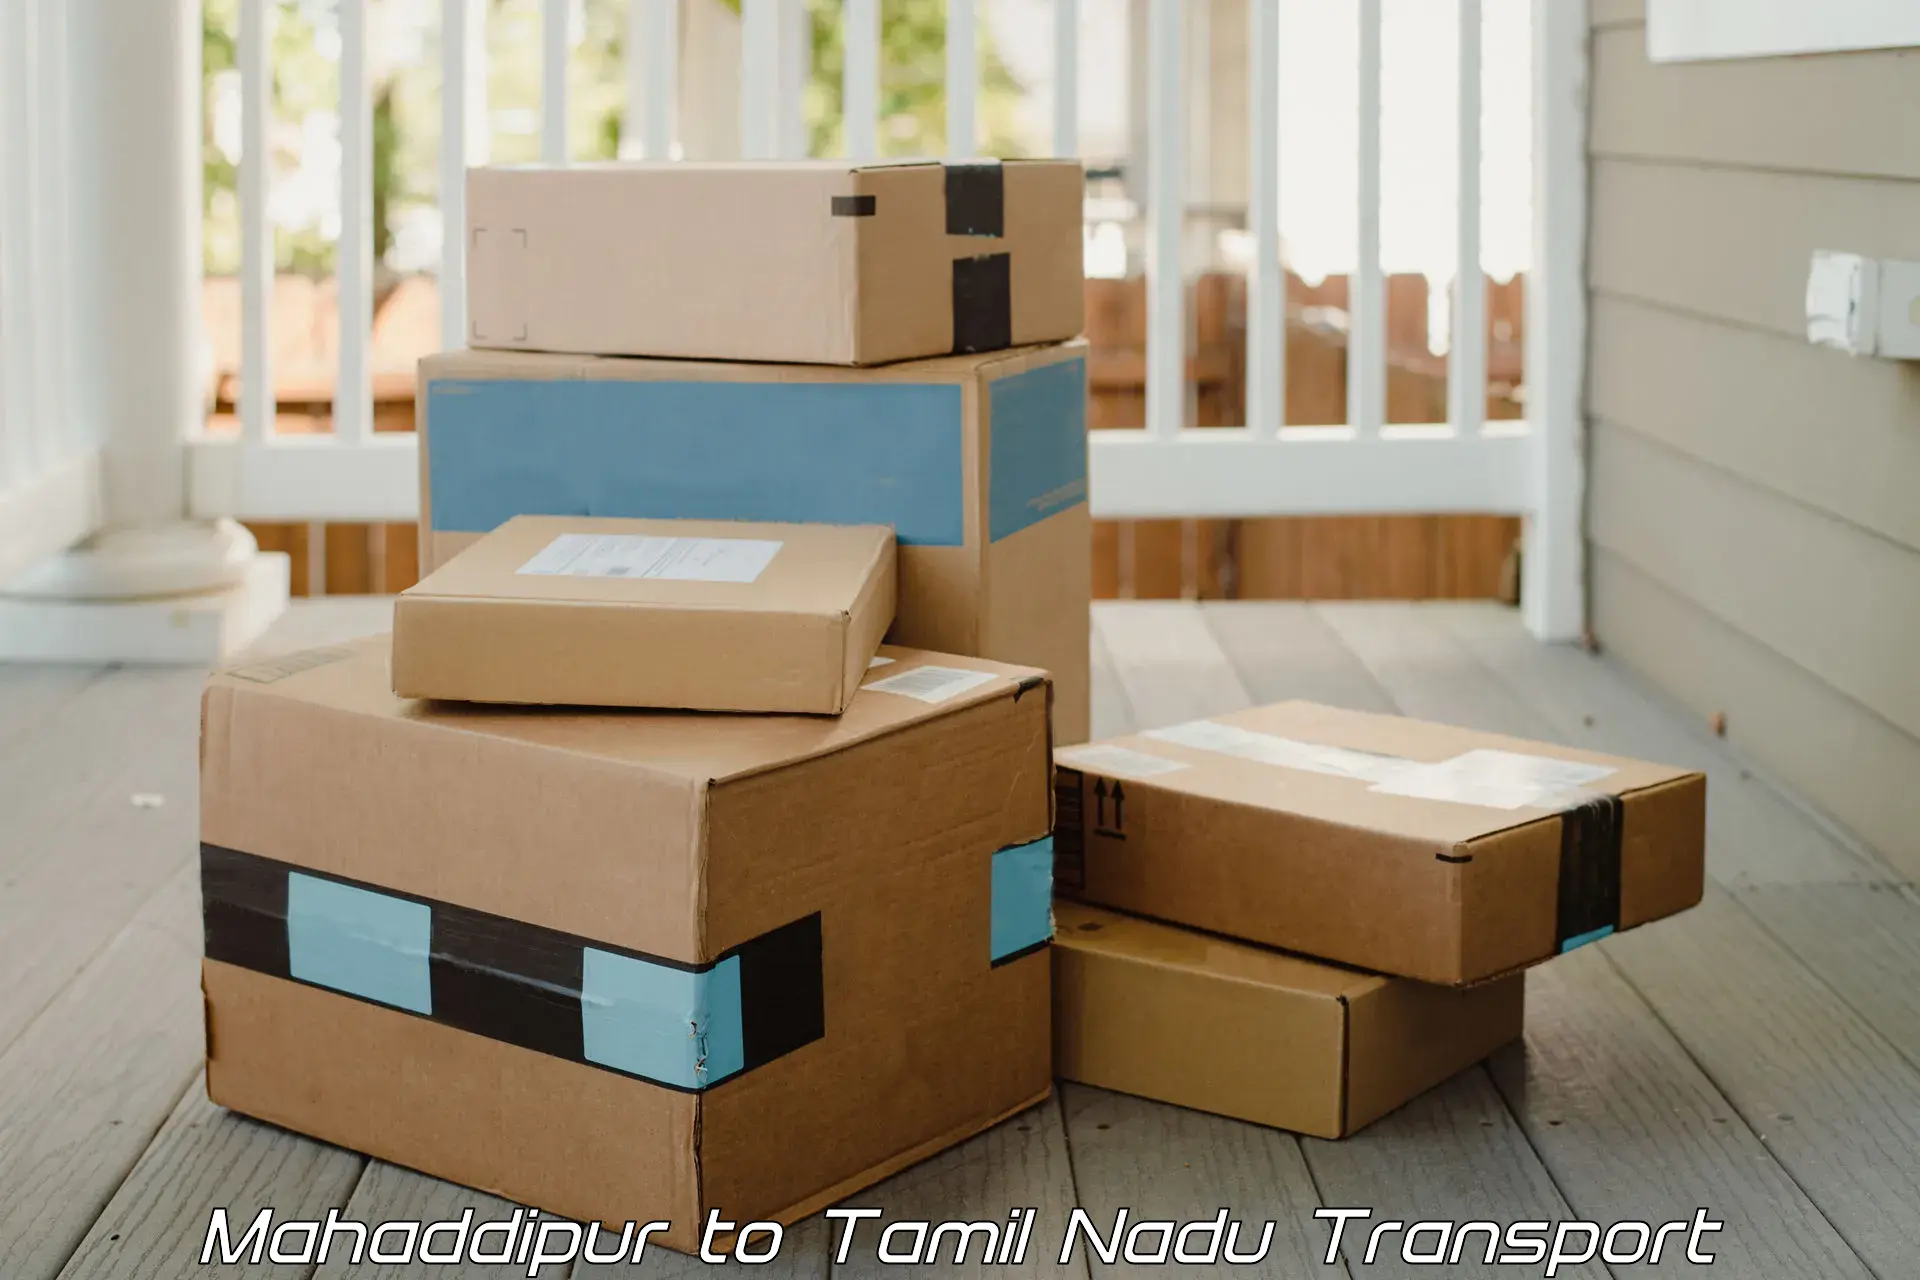 Lorry transport service Mahaddipur to Tiruturaipundi